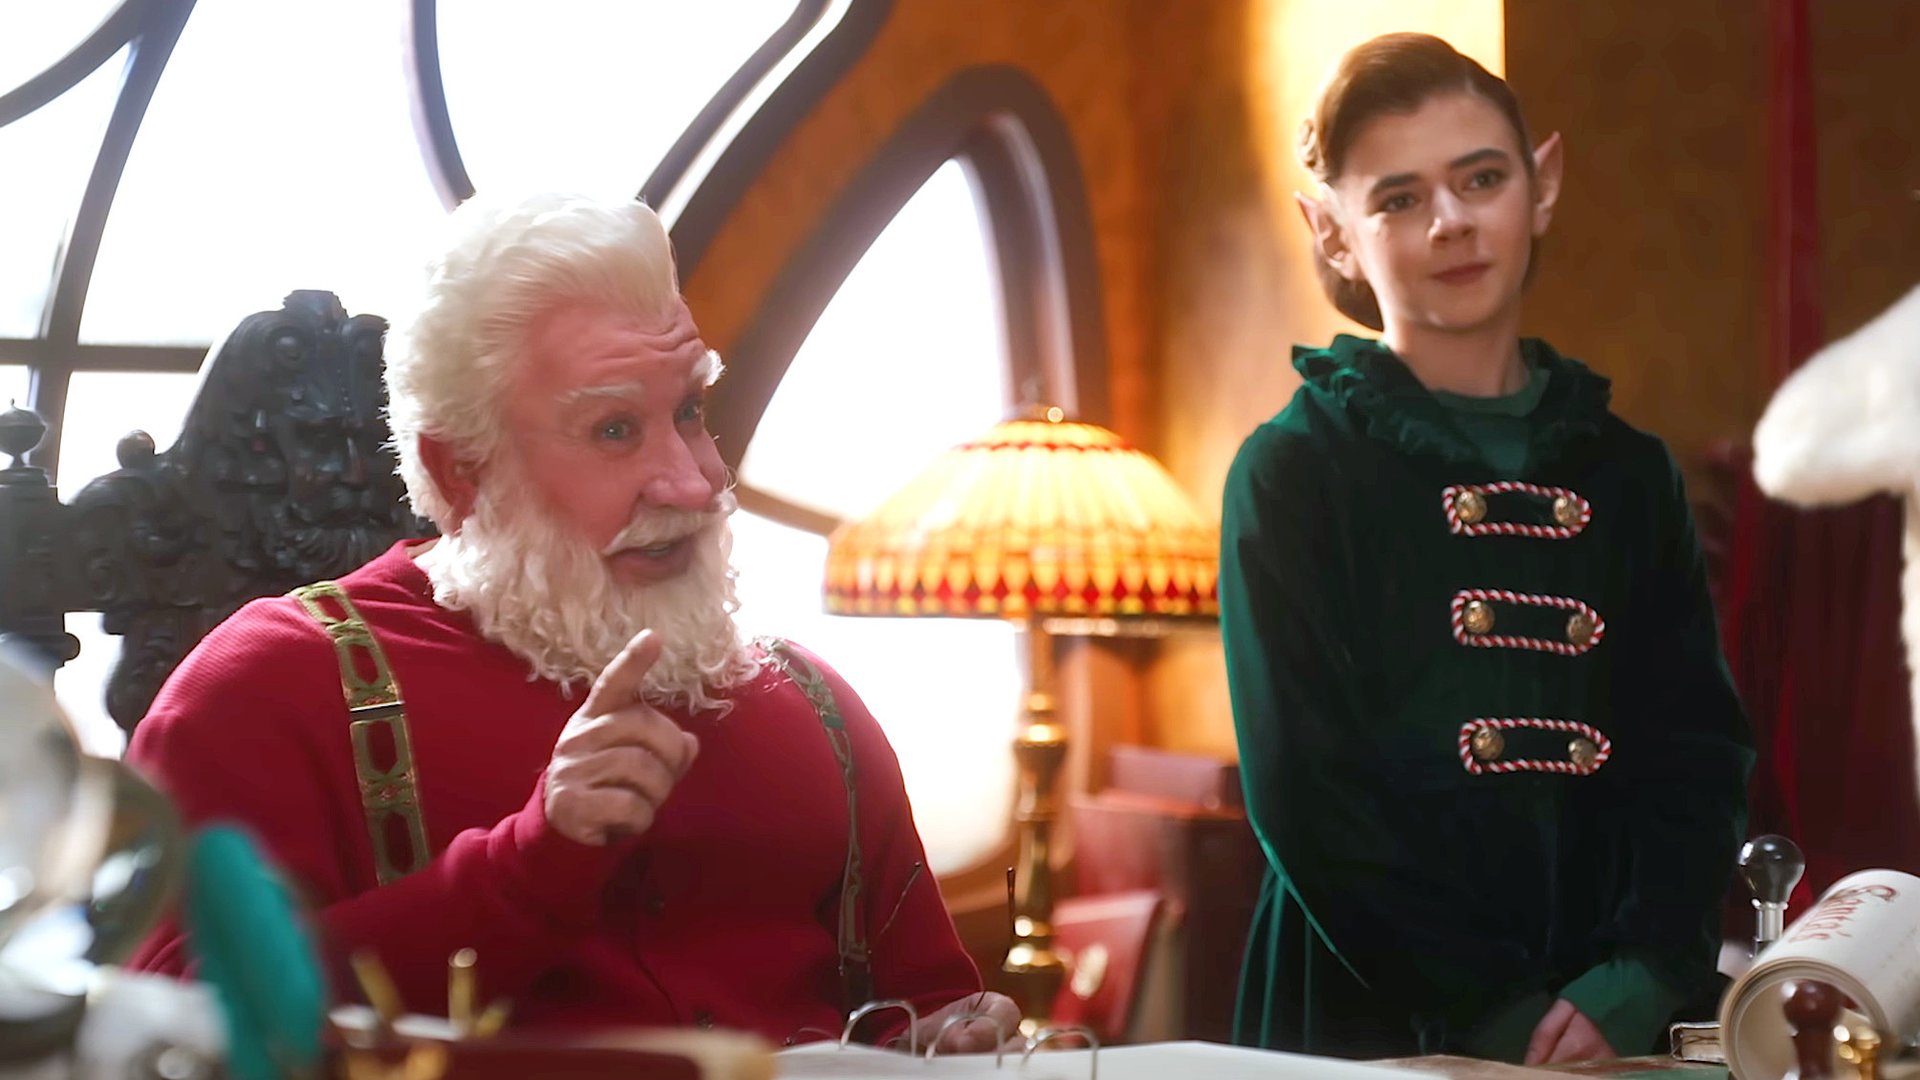 #Festliche Stimmung garantiert: Erster Disney-Trailer zur „Santa Clause“-Fortsetzung mit Tim Allen